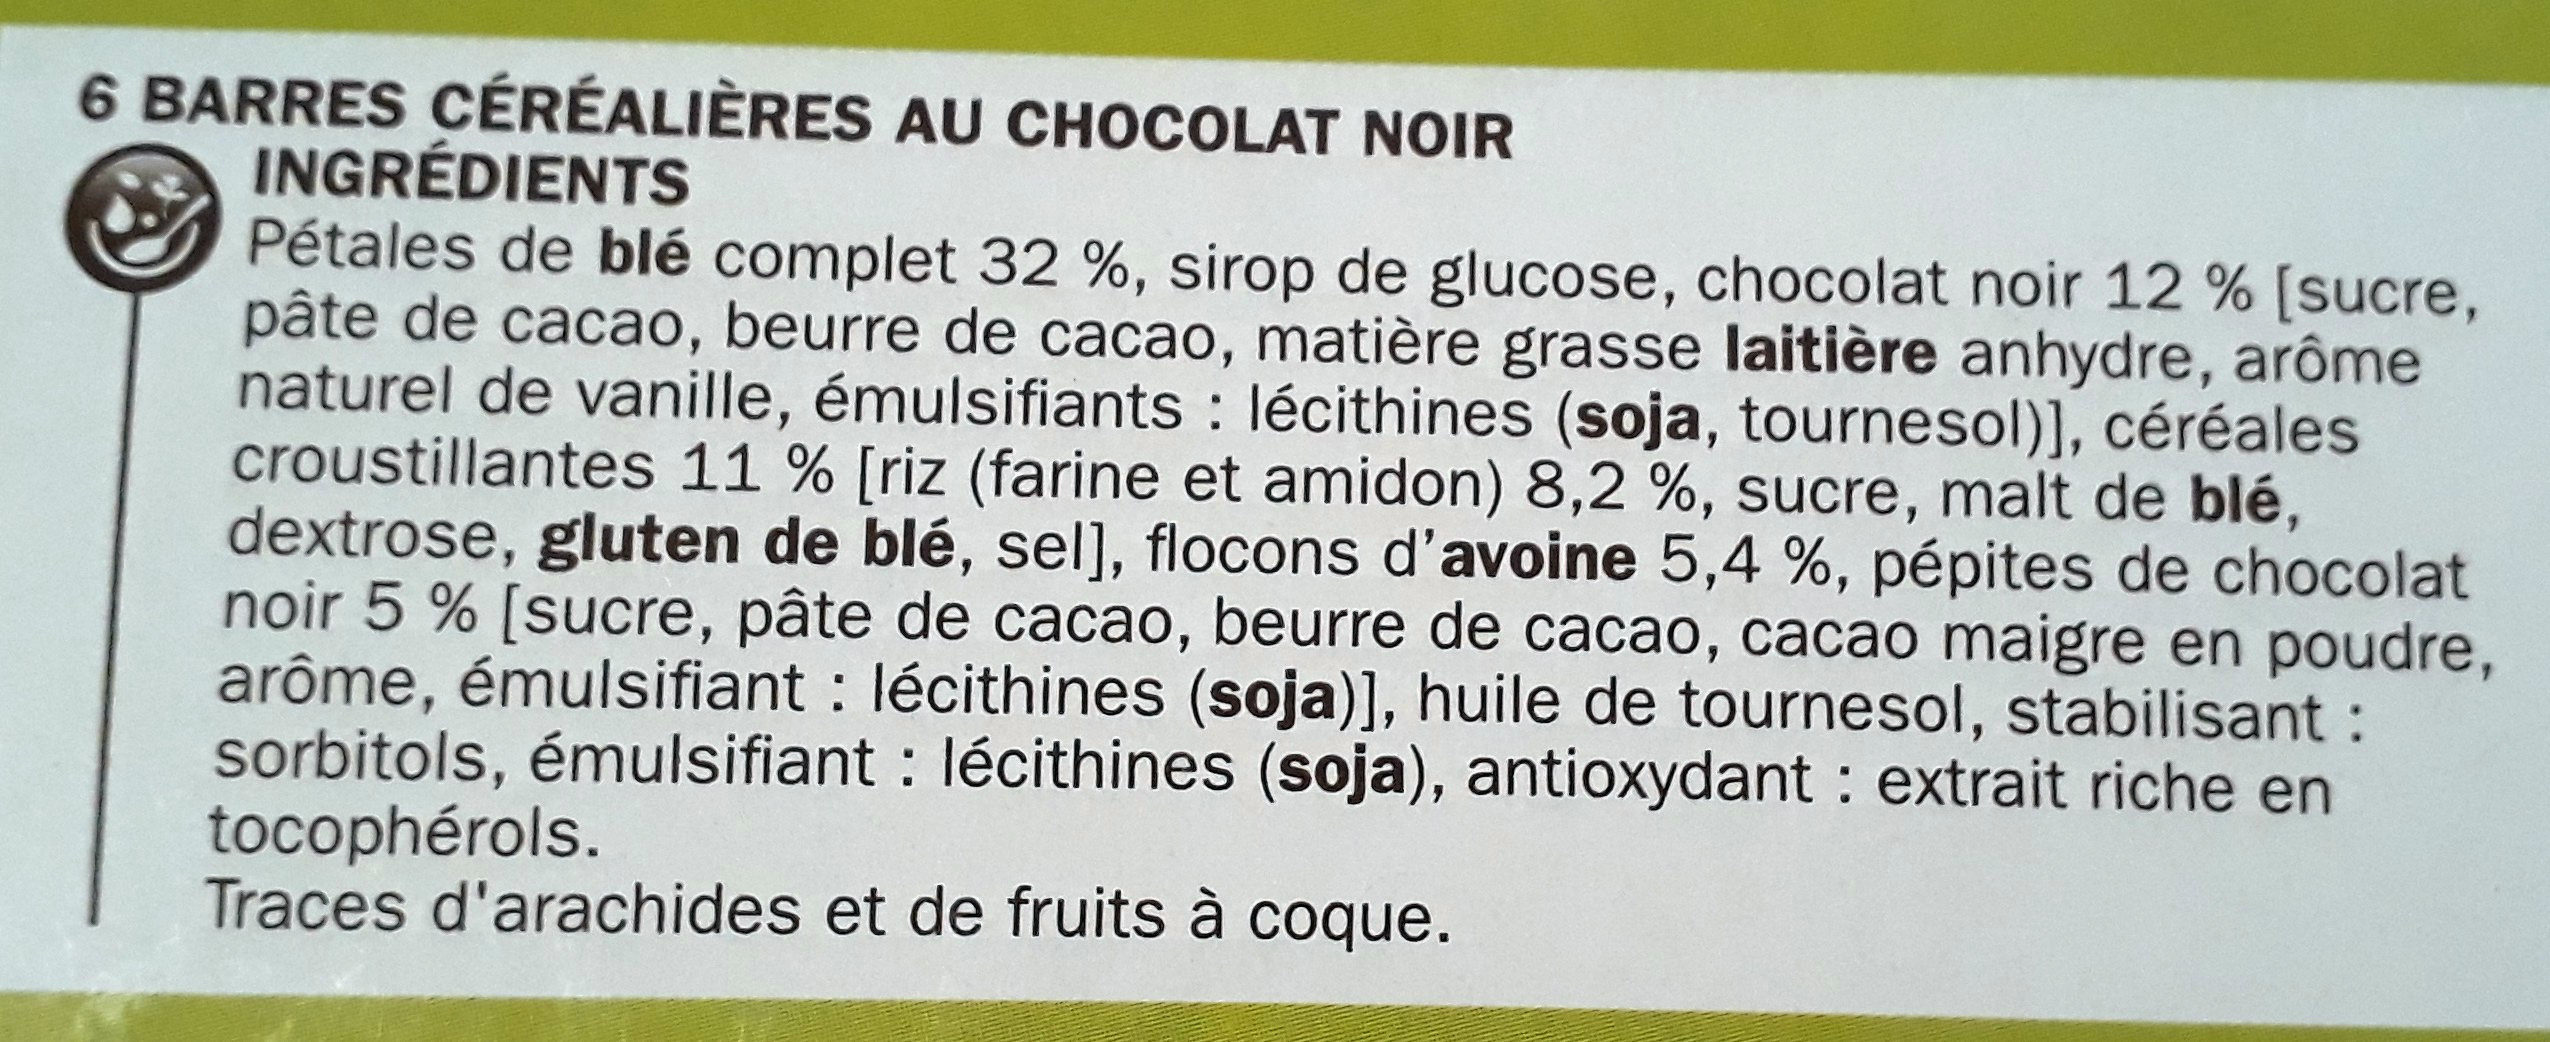 Barres céréales au blé complet chocolat noir x 6 - Ingredients - fr